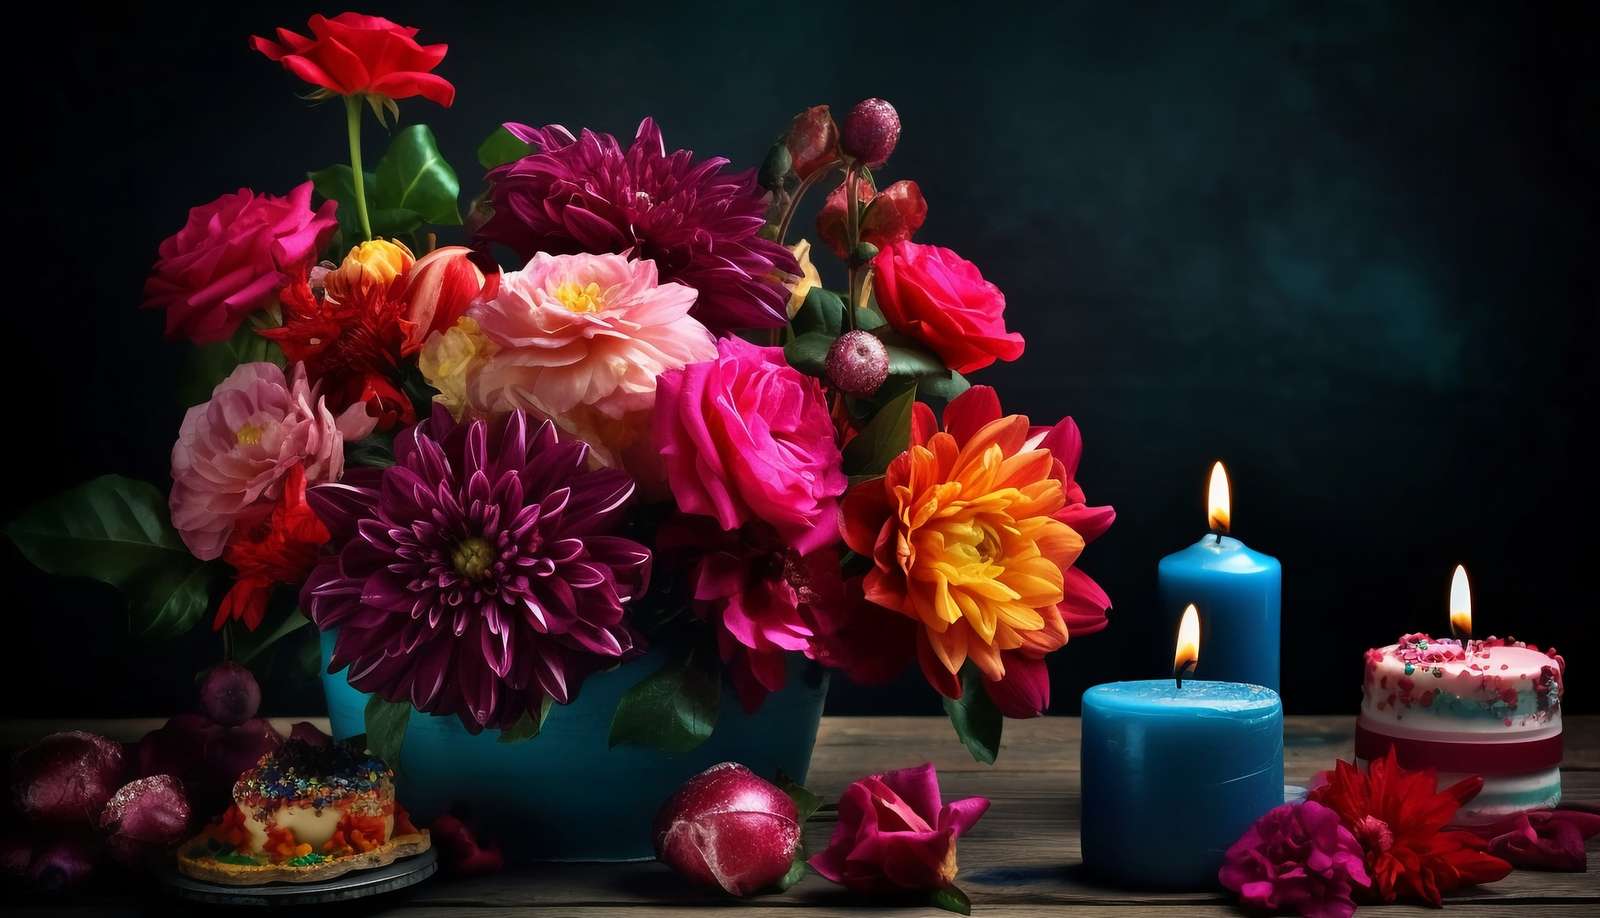 Kaarsen naast een boeket kleurrijke bloemen online puzzel